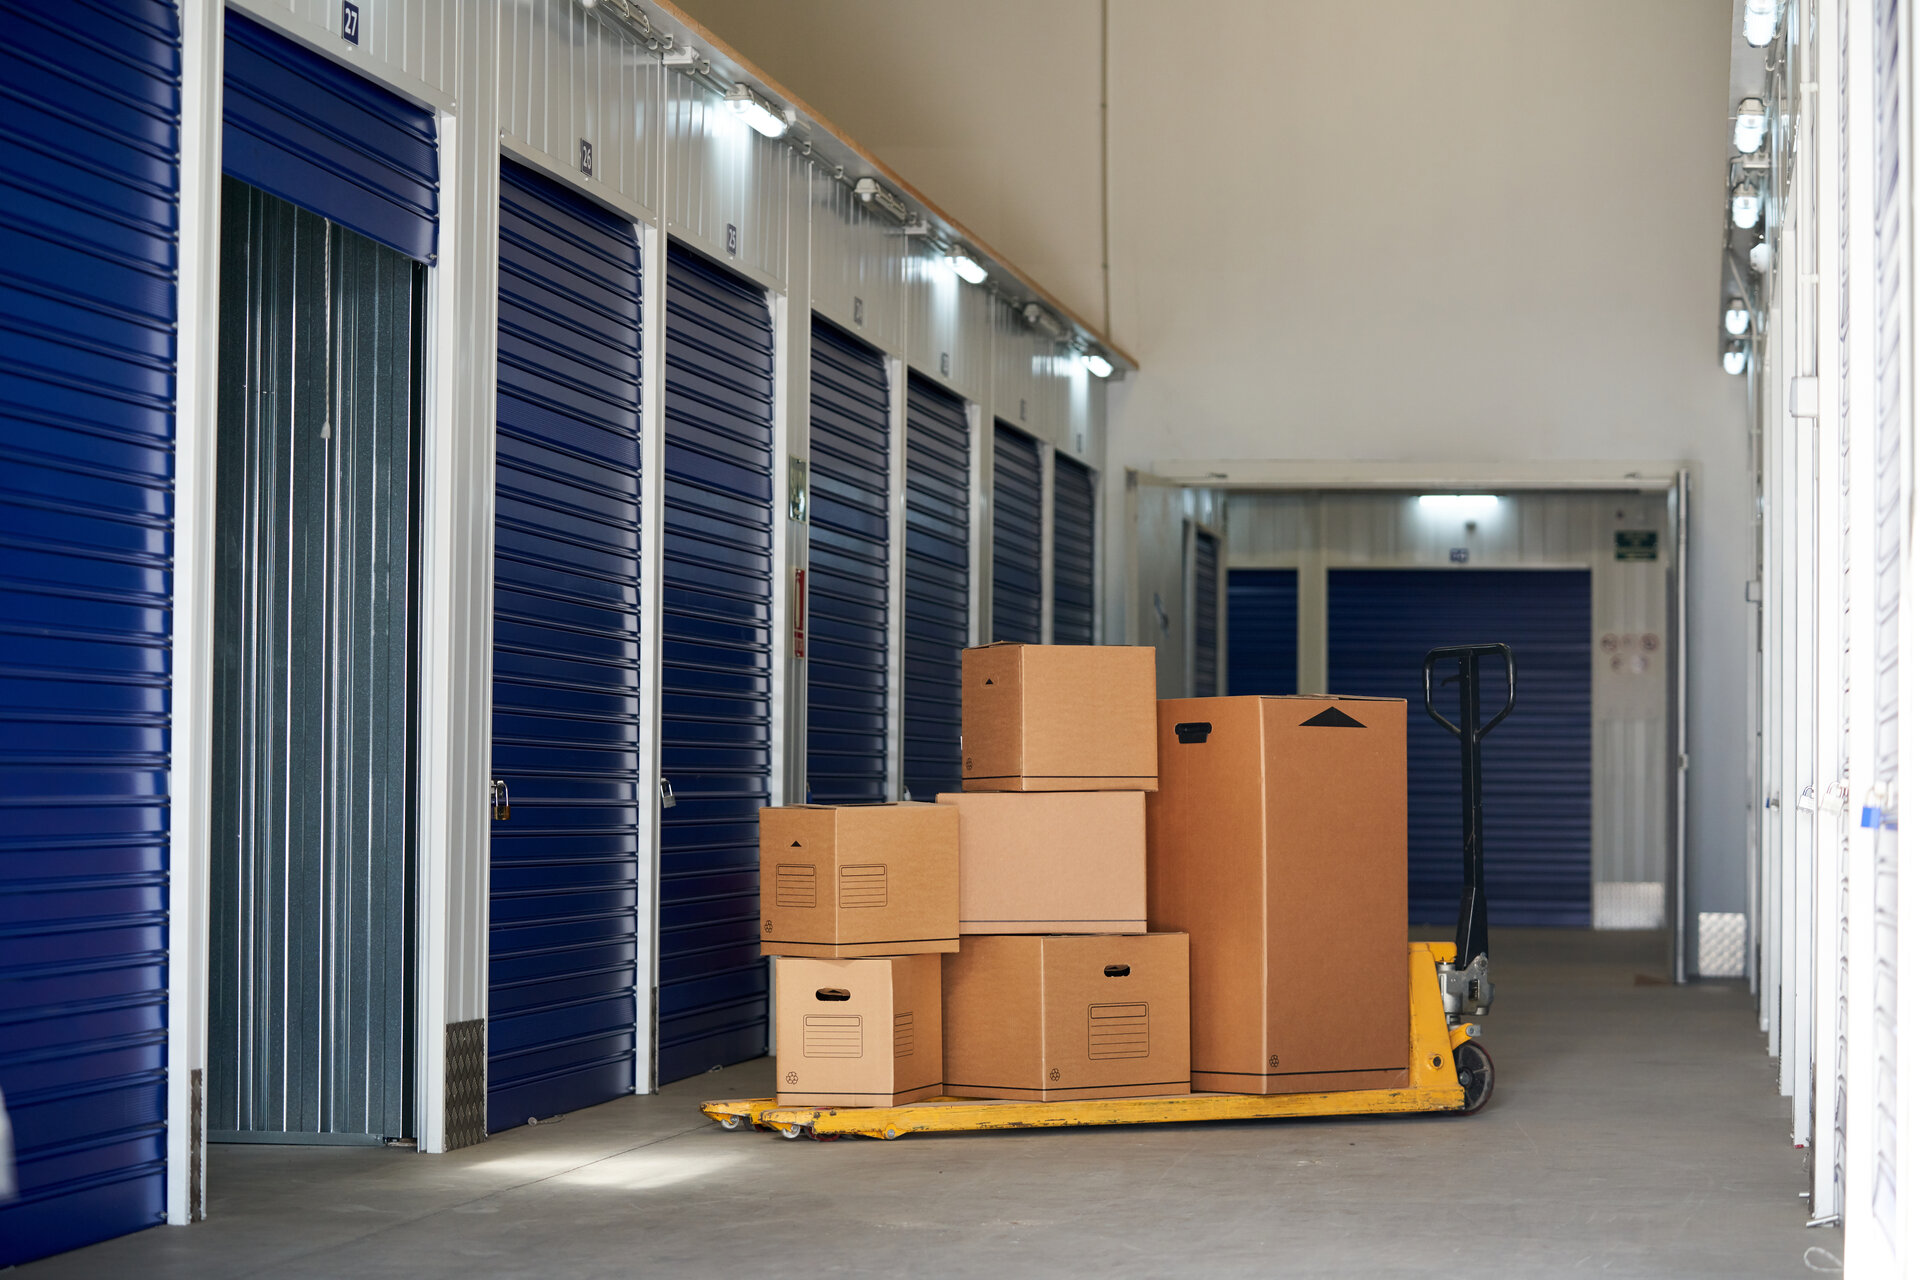 Lagercontainer mieten: Eine Investition in eine sichere, flexible und einfache Lösung